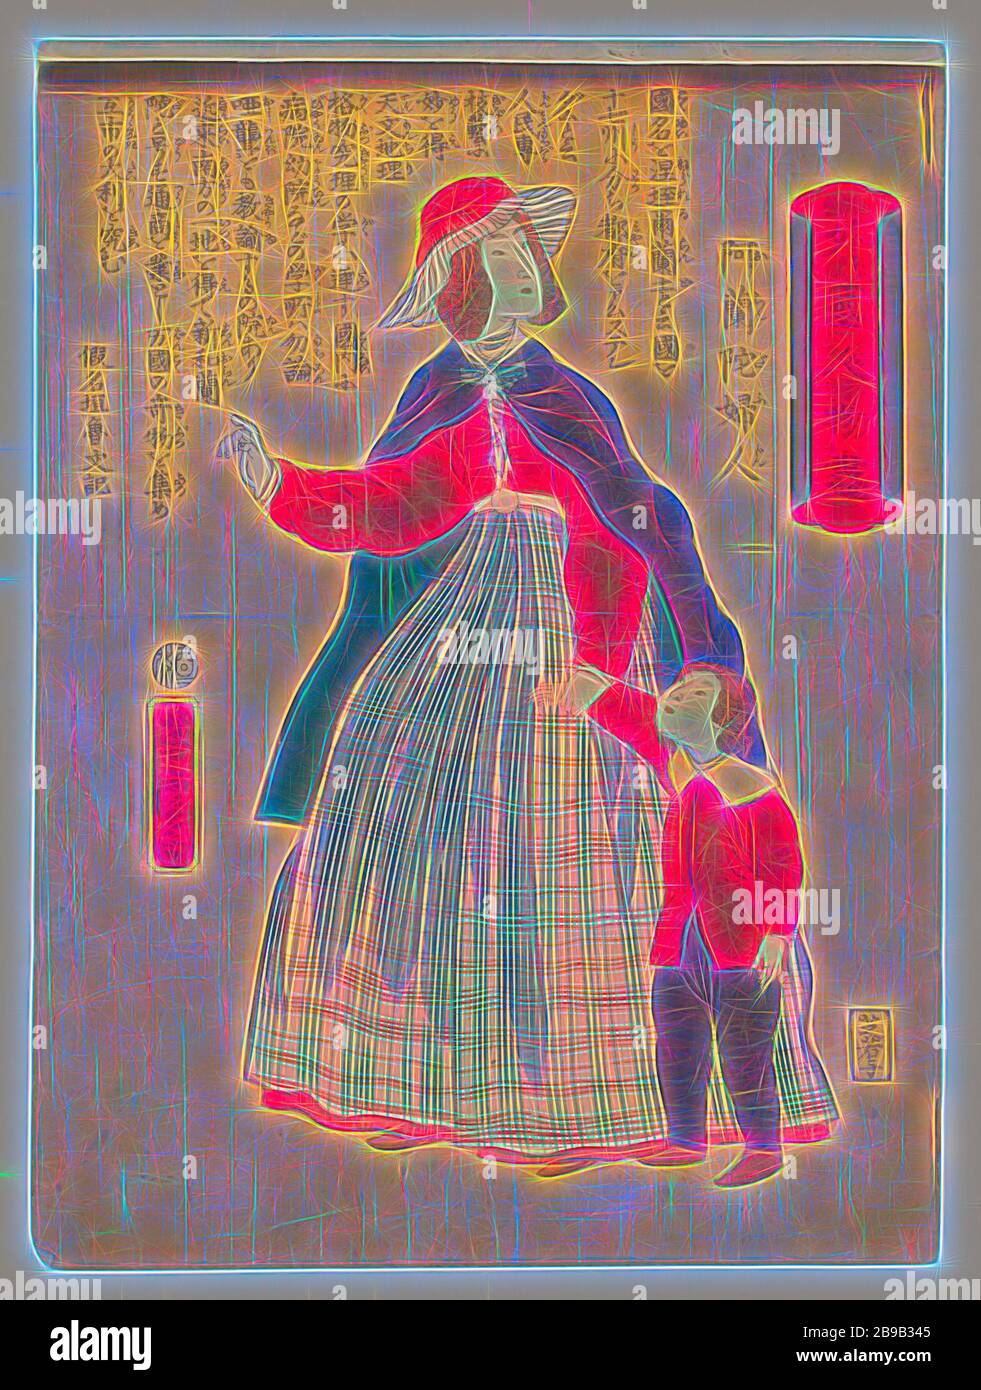 Mujer holandesa con el niño Gaikoku jinbutsuga - Oranda fujin (título de objeto), una mujer holandesa en una amplia falda a cuadros y una blusa roja, capa y sombrero, un niño sobre su izquierda, probablemente su hijo, su mano derecha ligeramente levantada, mira a la derecha. El texto en caracteres japoneses fue escrito por el escritor satírico () / periodista Kanagaki Robun (1829-1894): "El nombre del país es el de los Países Bajos. La tierra está dividida en 17 provincias y su capital es Amsterdam. Las personas son buenas en arte y tecnología, y la ciencia se entiende muy bien allí. Evidentemente hay hospitales y escuelas en el Foto de stock